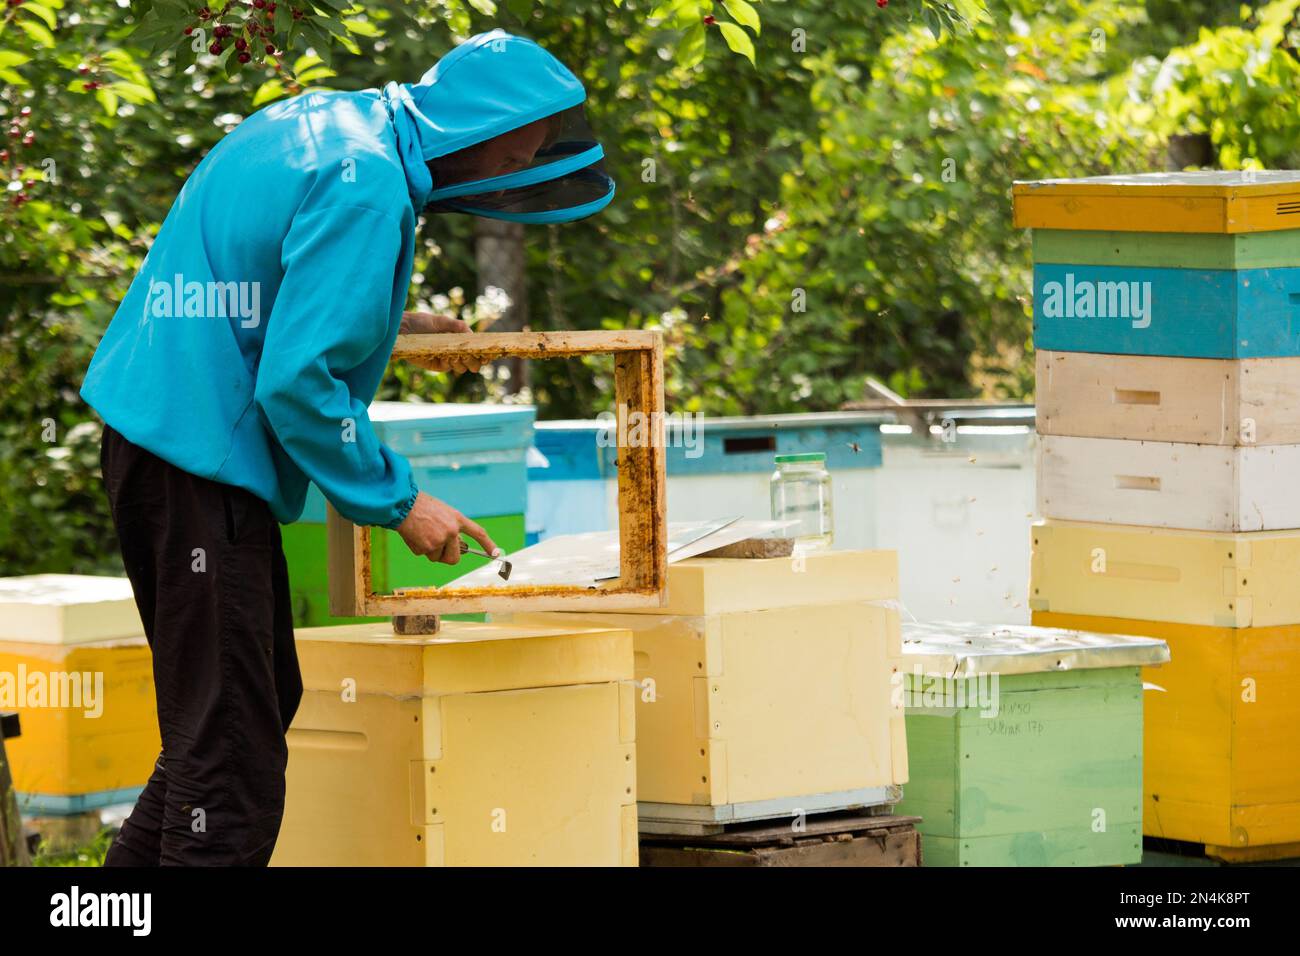 Der Imker reinigt Wachs mit dem Bienenstockwerkzeug aus dem Karton. Nesselsucht wird verarbeitet. Arbeitet an der Imkerei. Bienenzucht. Stockfoto